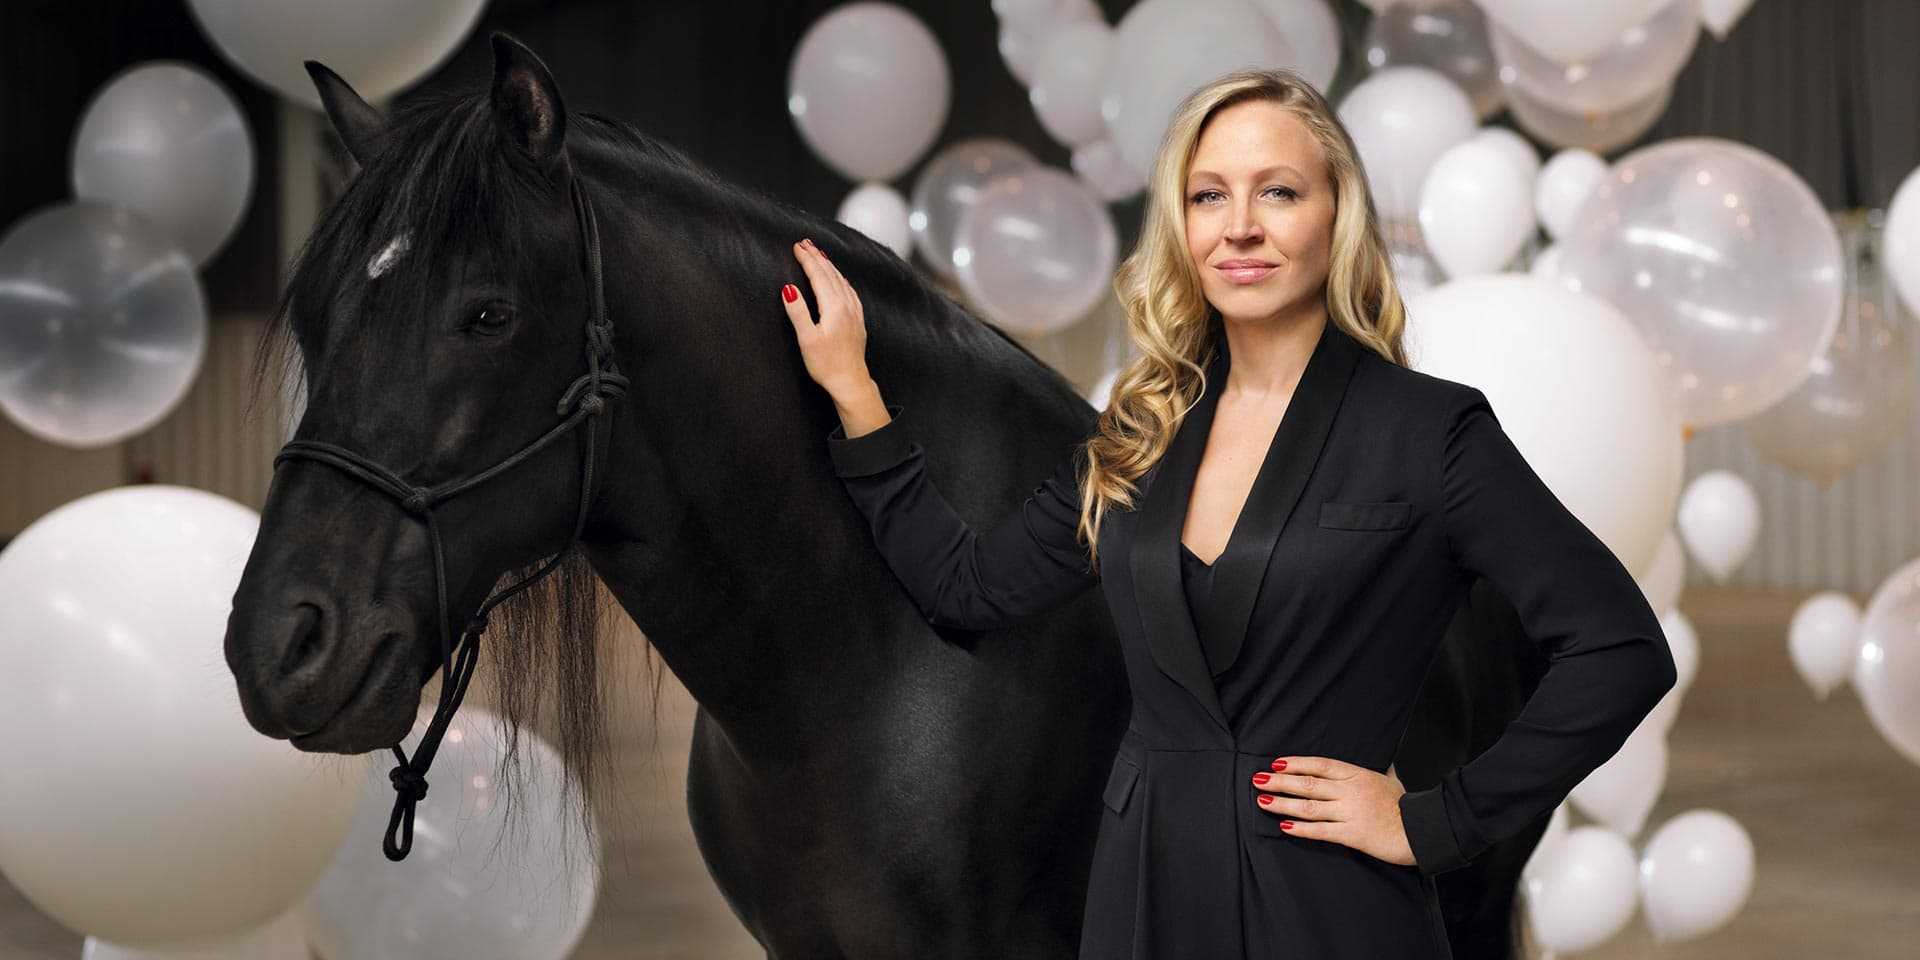 Eine Frau steht neben einem schwarzen Pferd auf einem Ball aus Ballons.